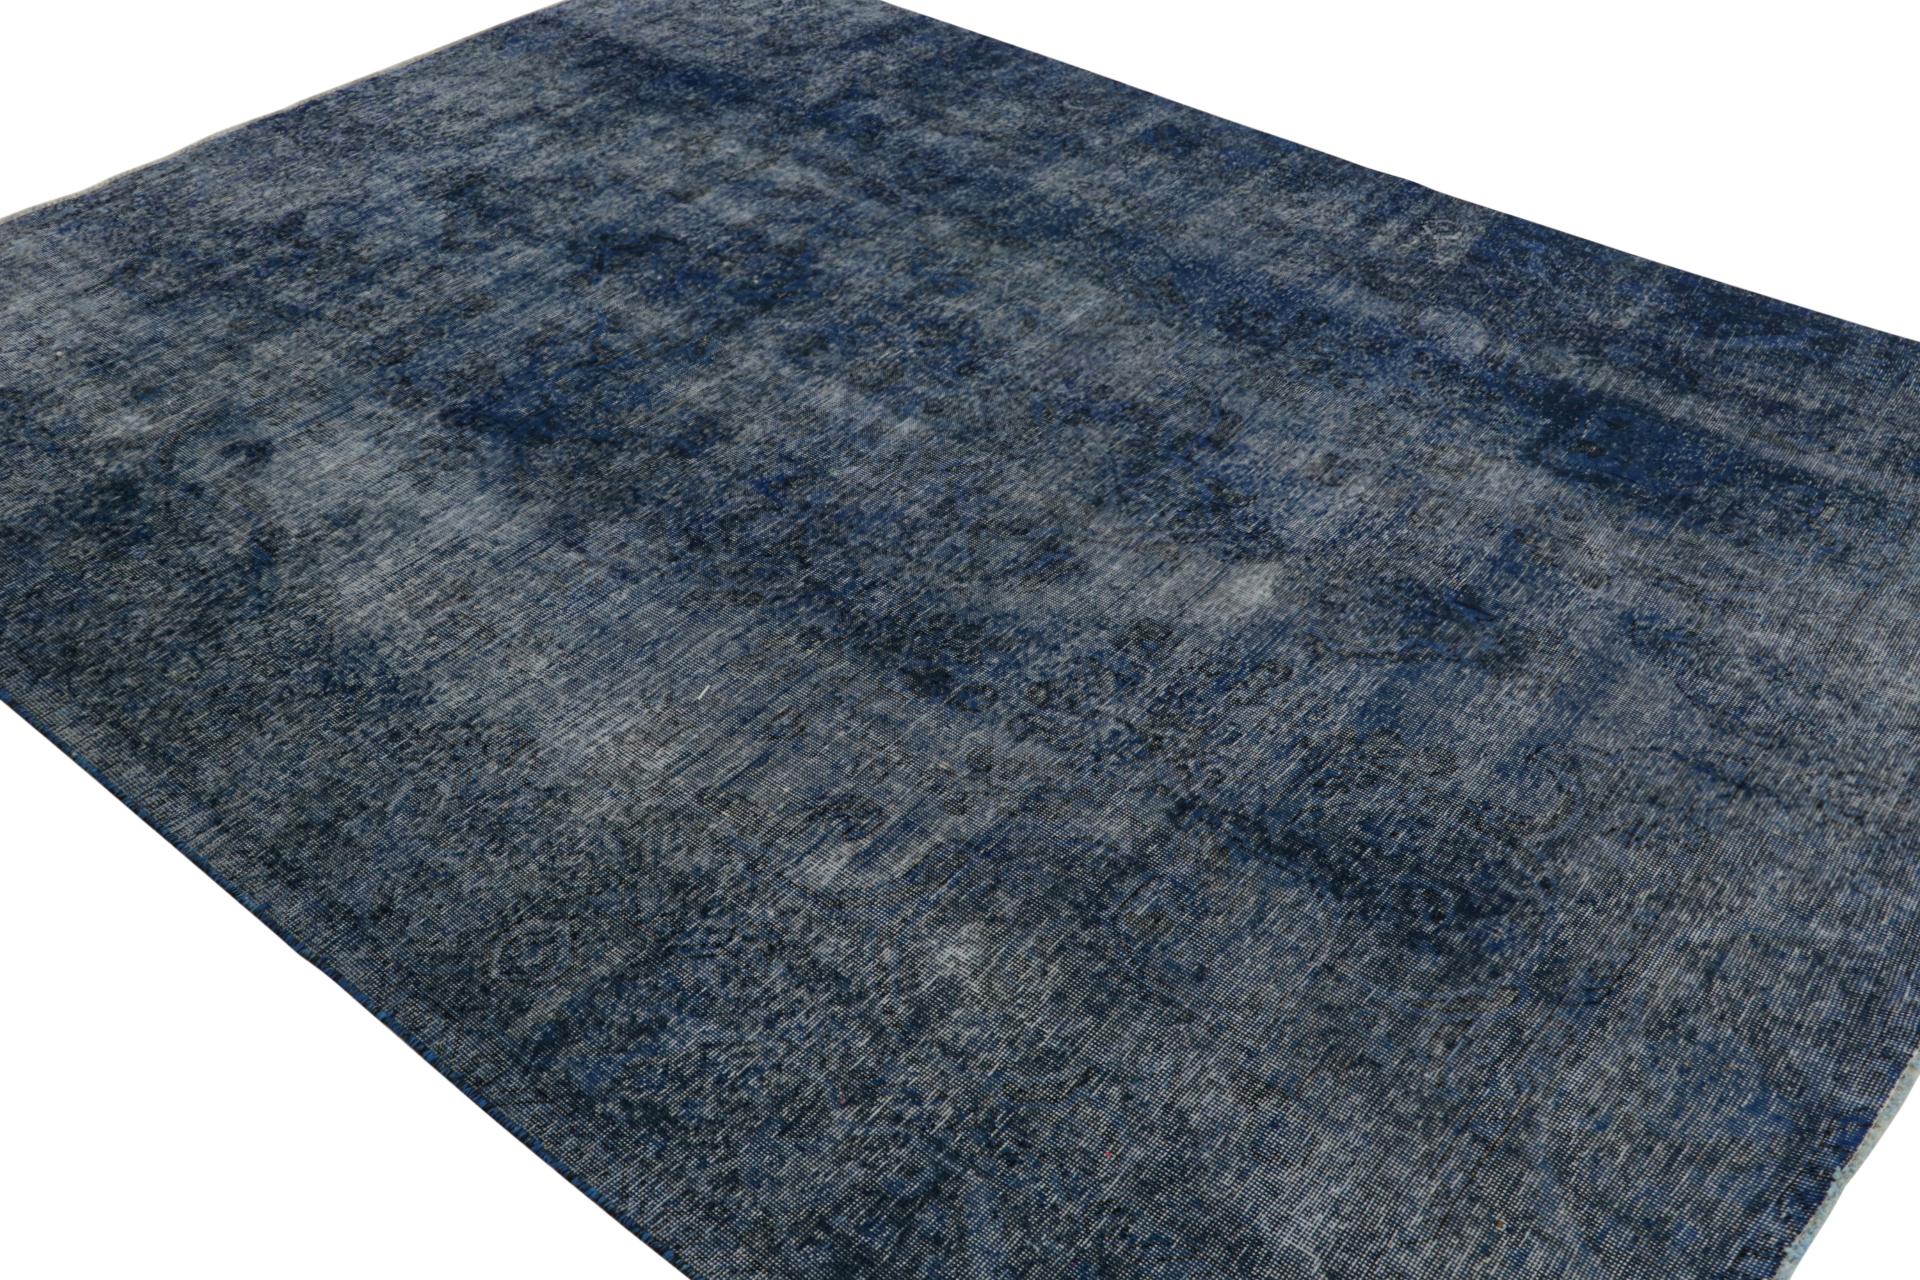 De notre nouvelle collection de tapis surteints, un tapis persan vintage 8x11 datant d'environ 1970-1980 ou peut-être plus tôt.

Sur le Design :

Ce tapis vintage a été soumis à un lavage particulier pour lui donner cet aspect ancien et ce style de